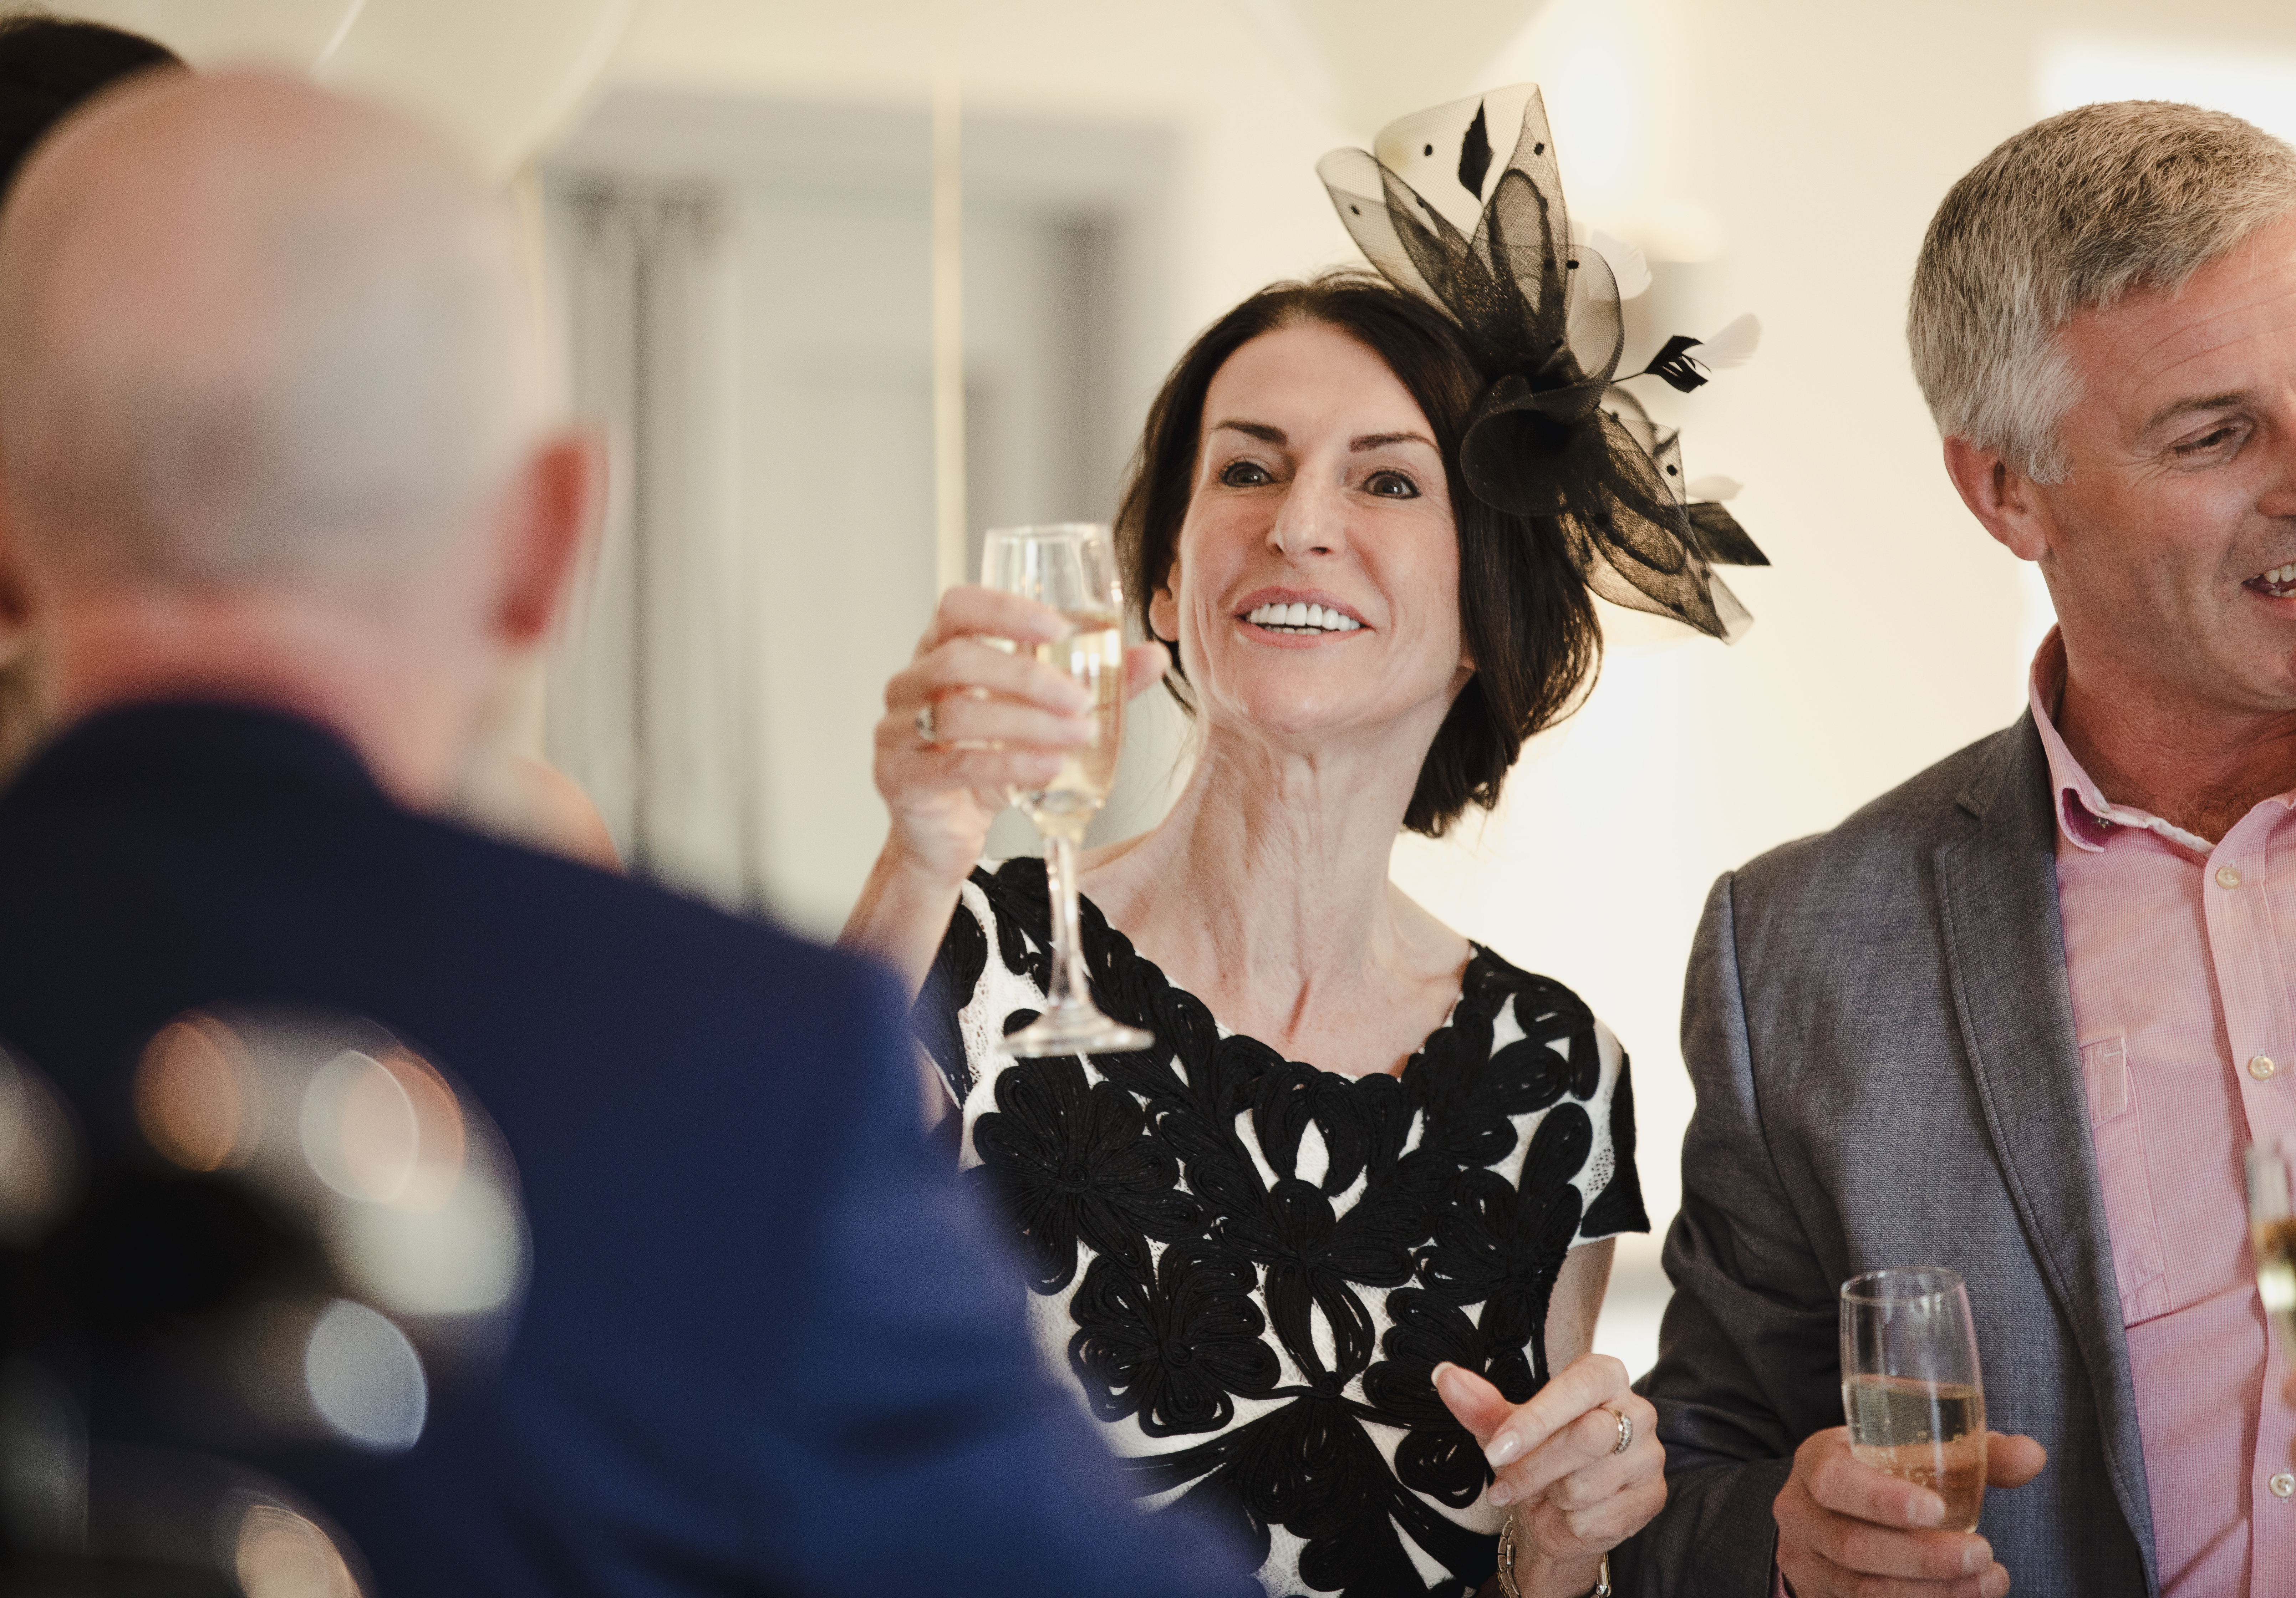 Una mujer comparte un brindis en una boda | Fuente: Shutterstock